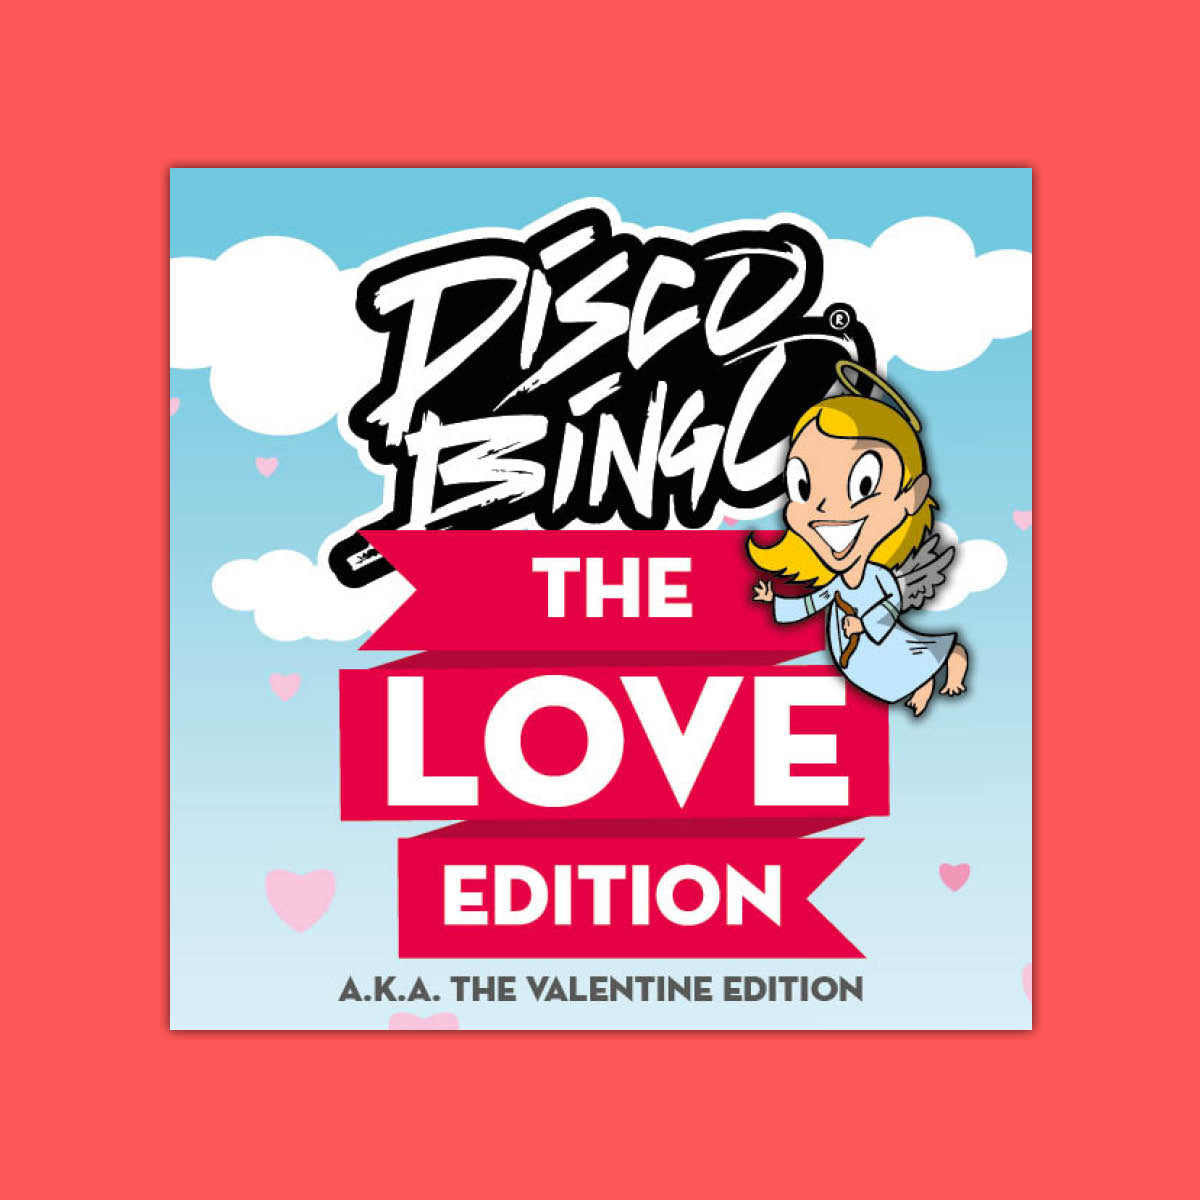 Disco Bingo The Love Edition (a.k.a. The Valentine Edition)